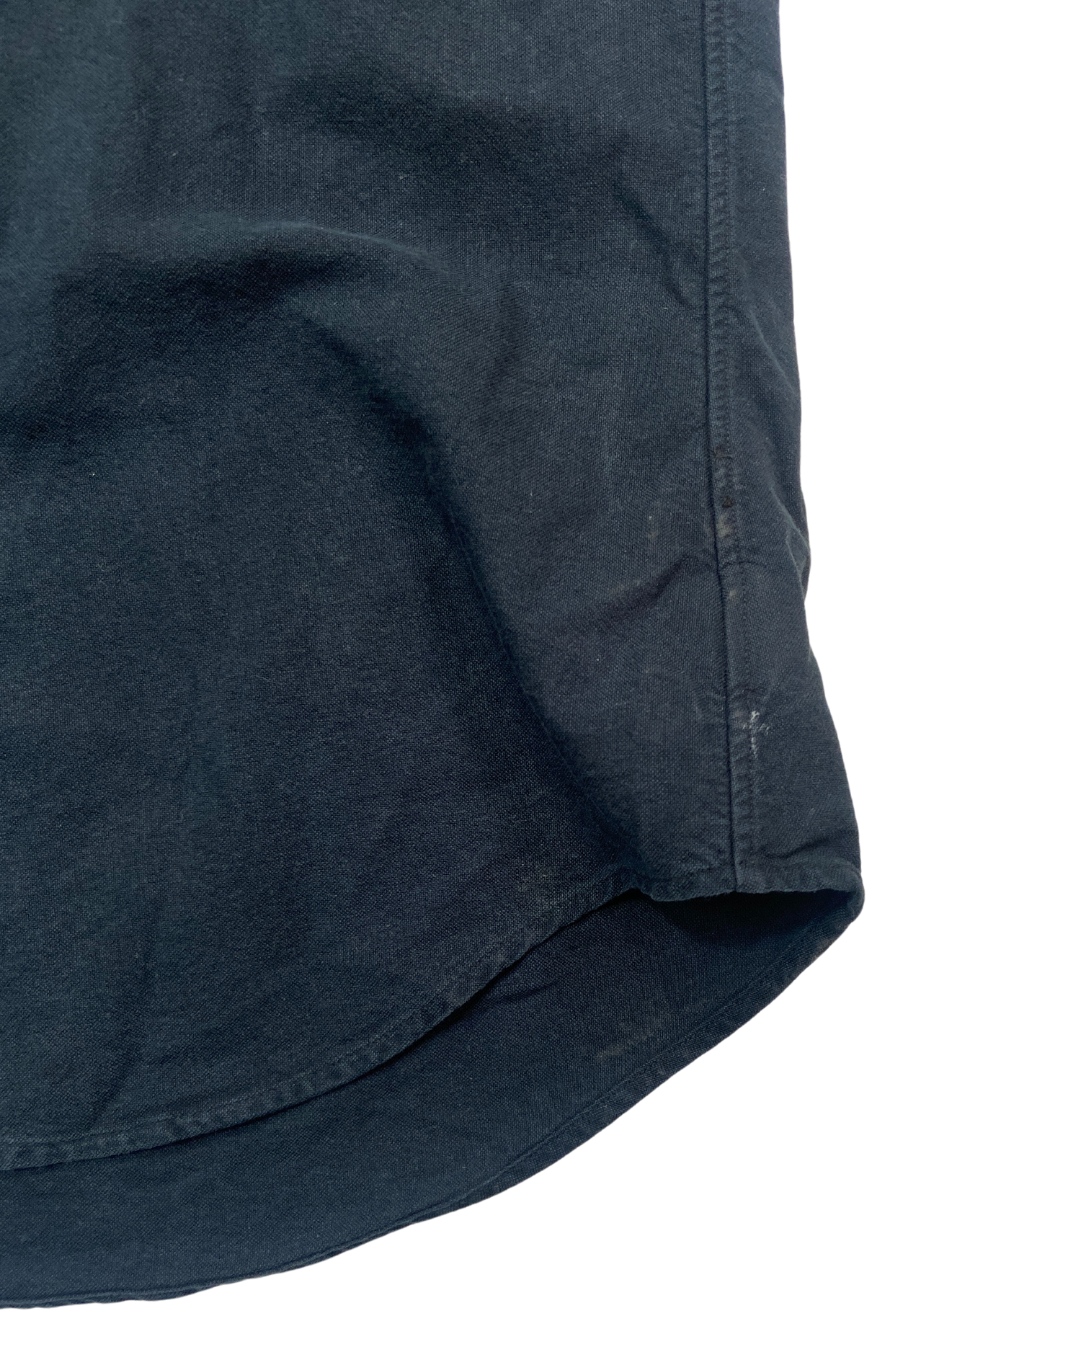 Ralph Lauren Short Sleeve Black Shirt